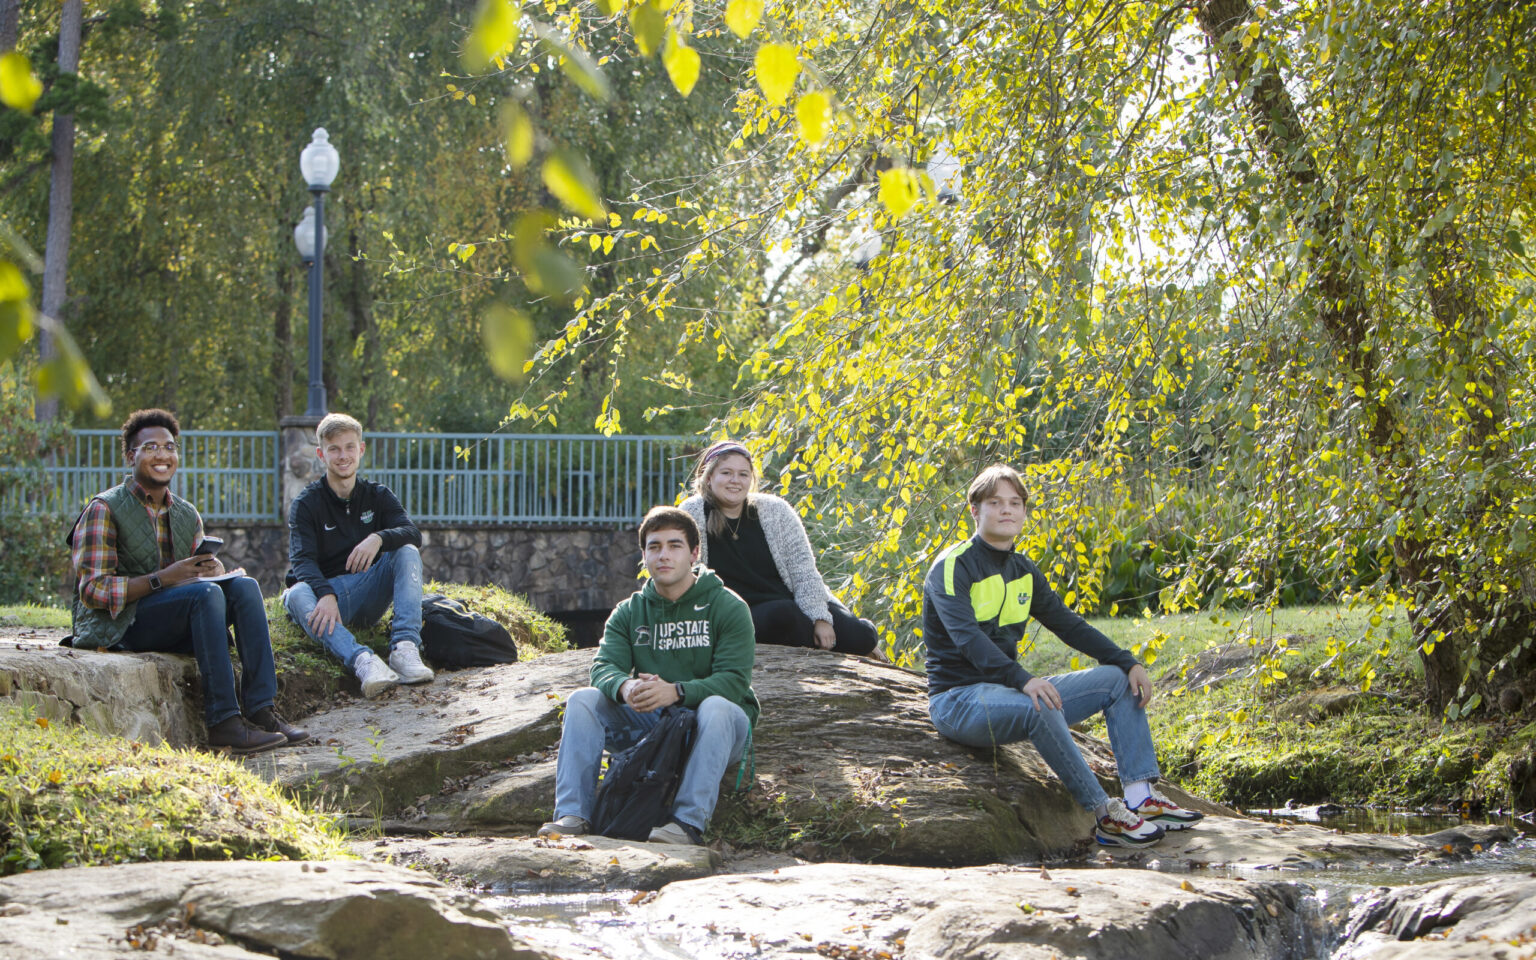 Students in the Arboretum